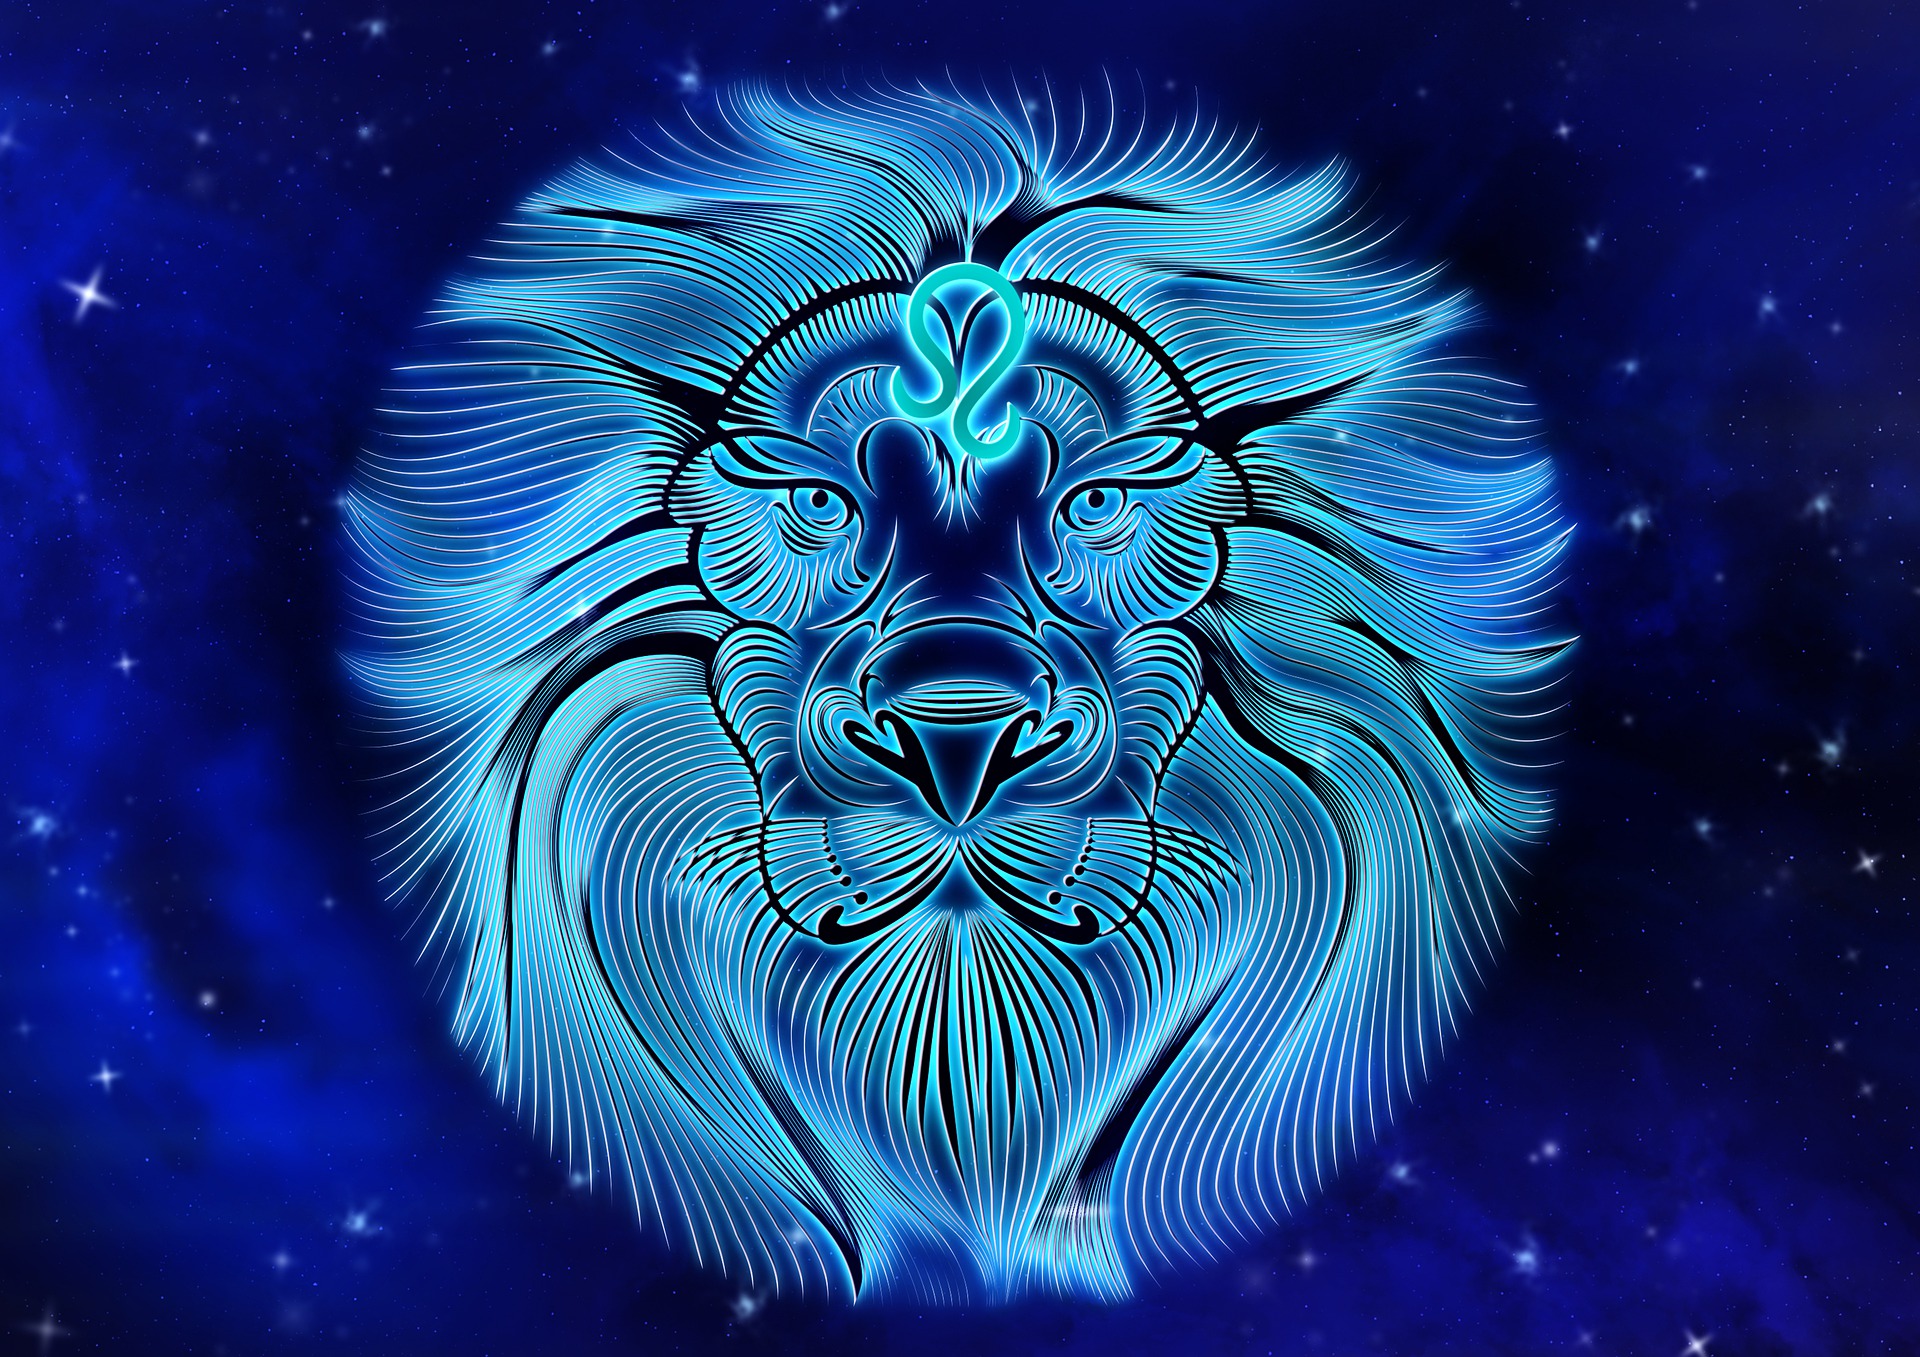 Blue Leo the Lion by DarkWorkX